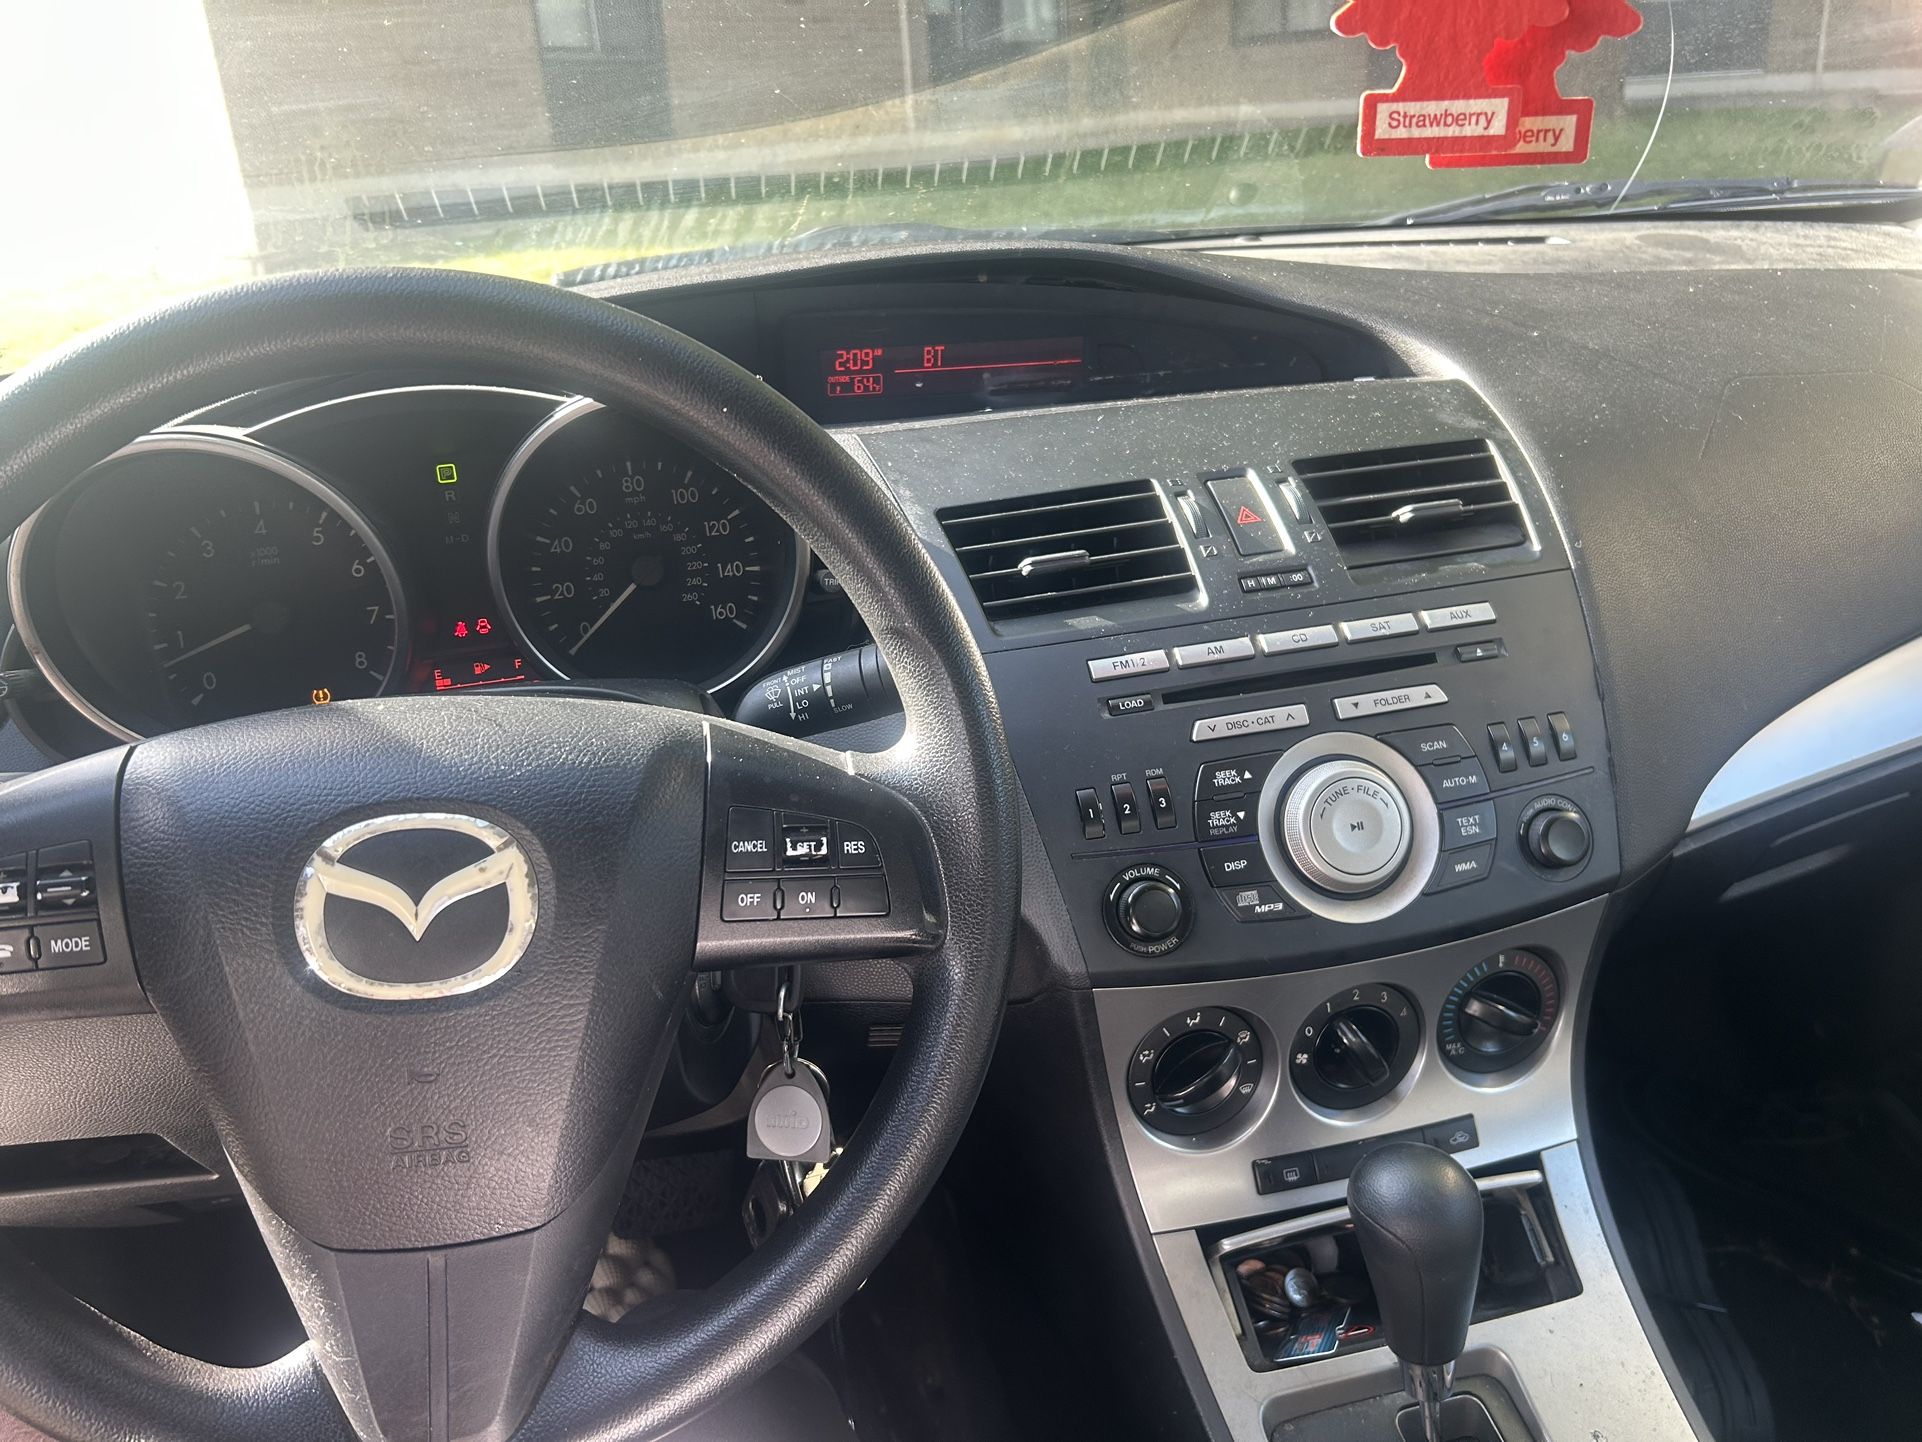 2011 Mazda Mazda3